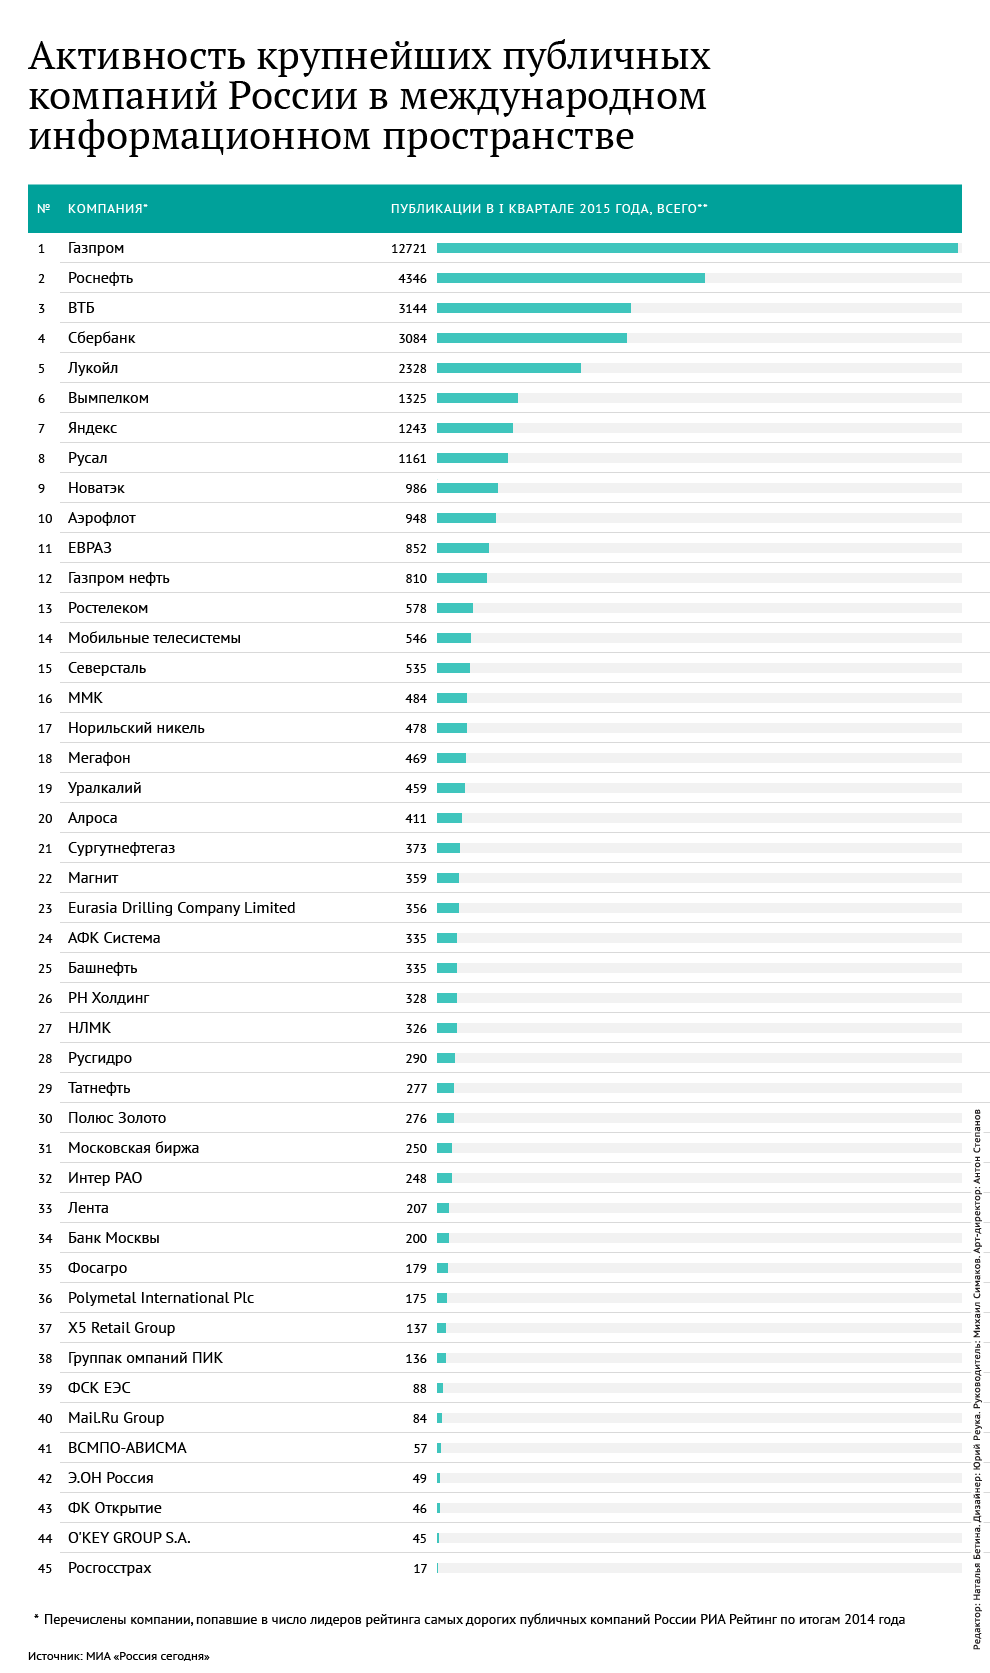 Активность крупнейших публичных компаний России в международном информационном пространстве